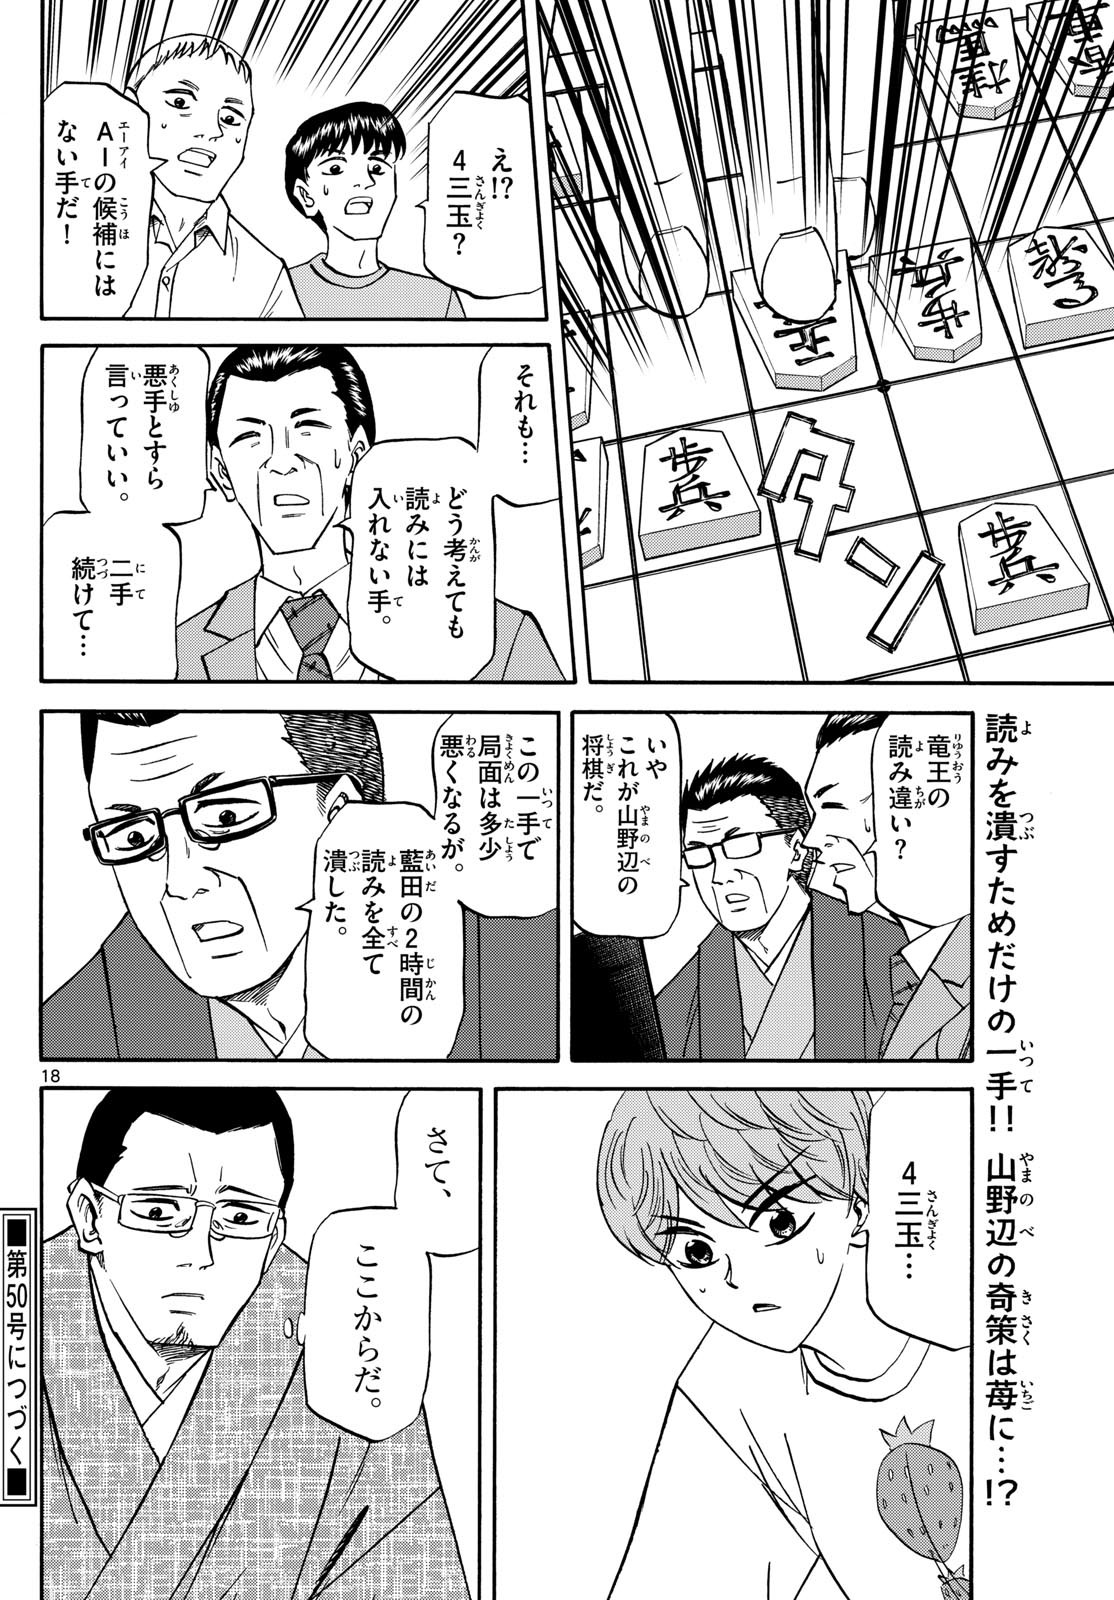 Ryu-to-Ichigo - Chapter 166 - Page 18